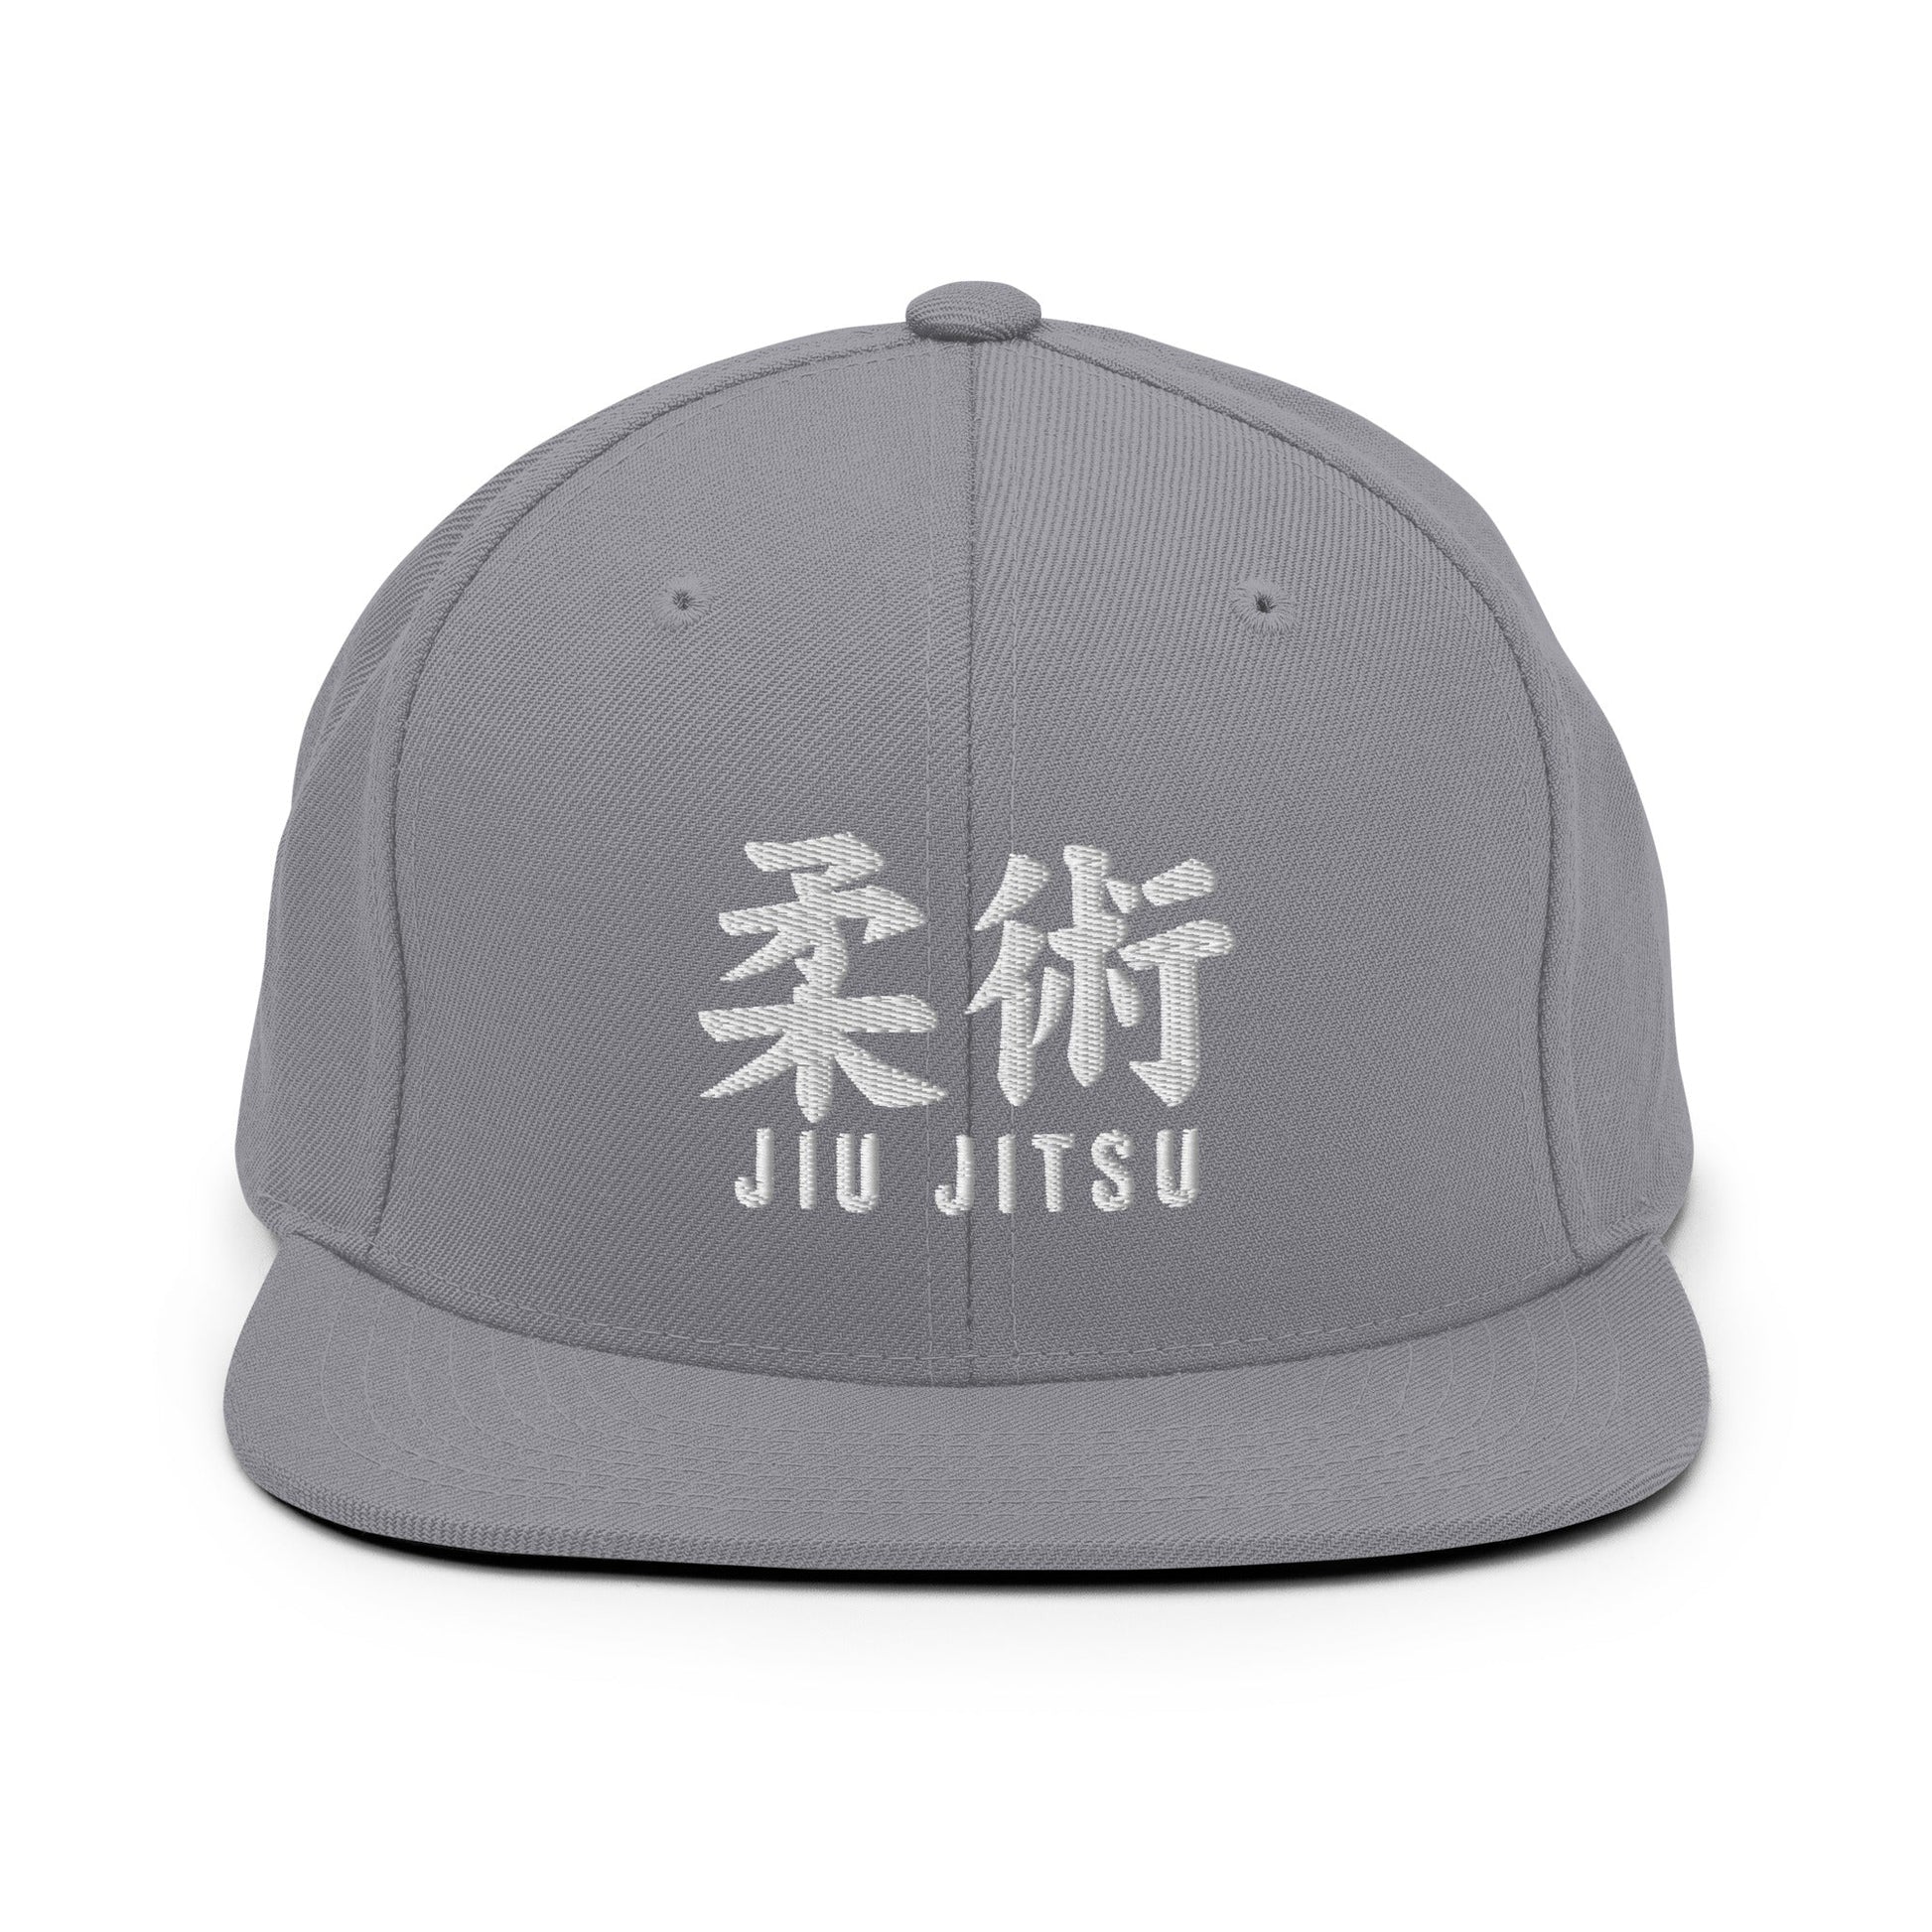 Jiu Jitsu Premium Snapback Hat Qonan Fightwear